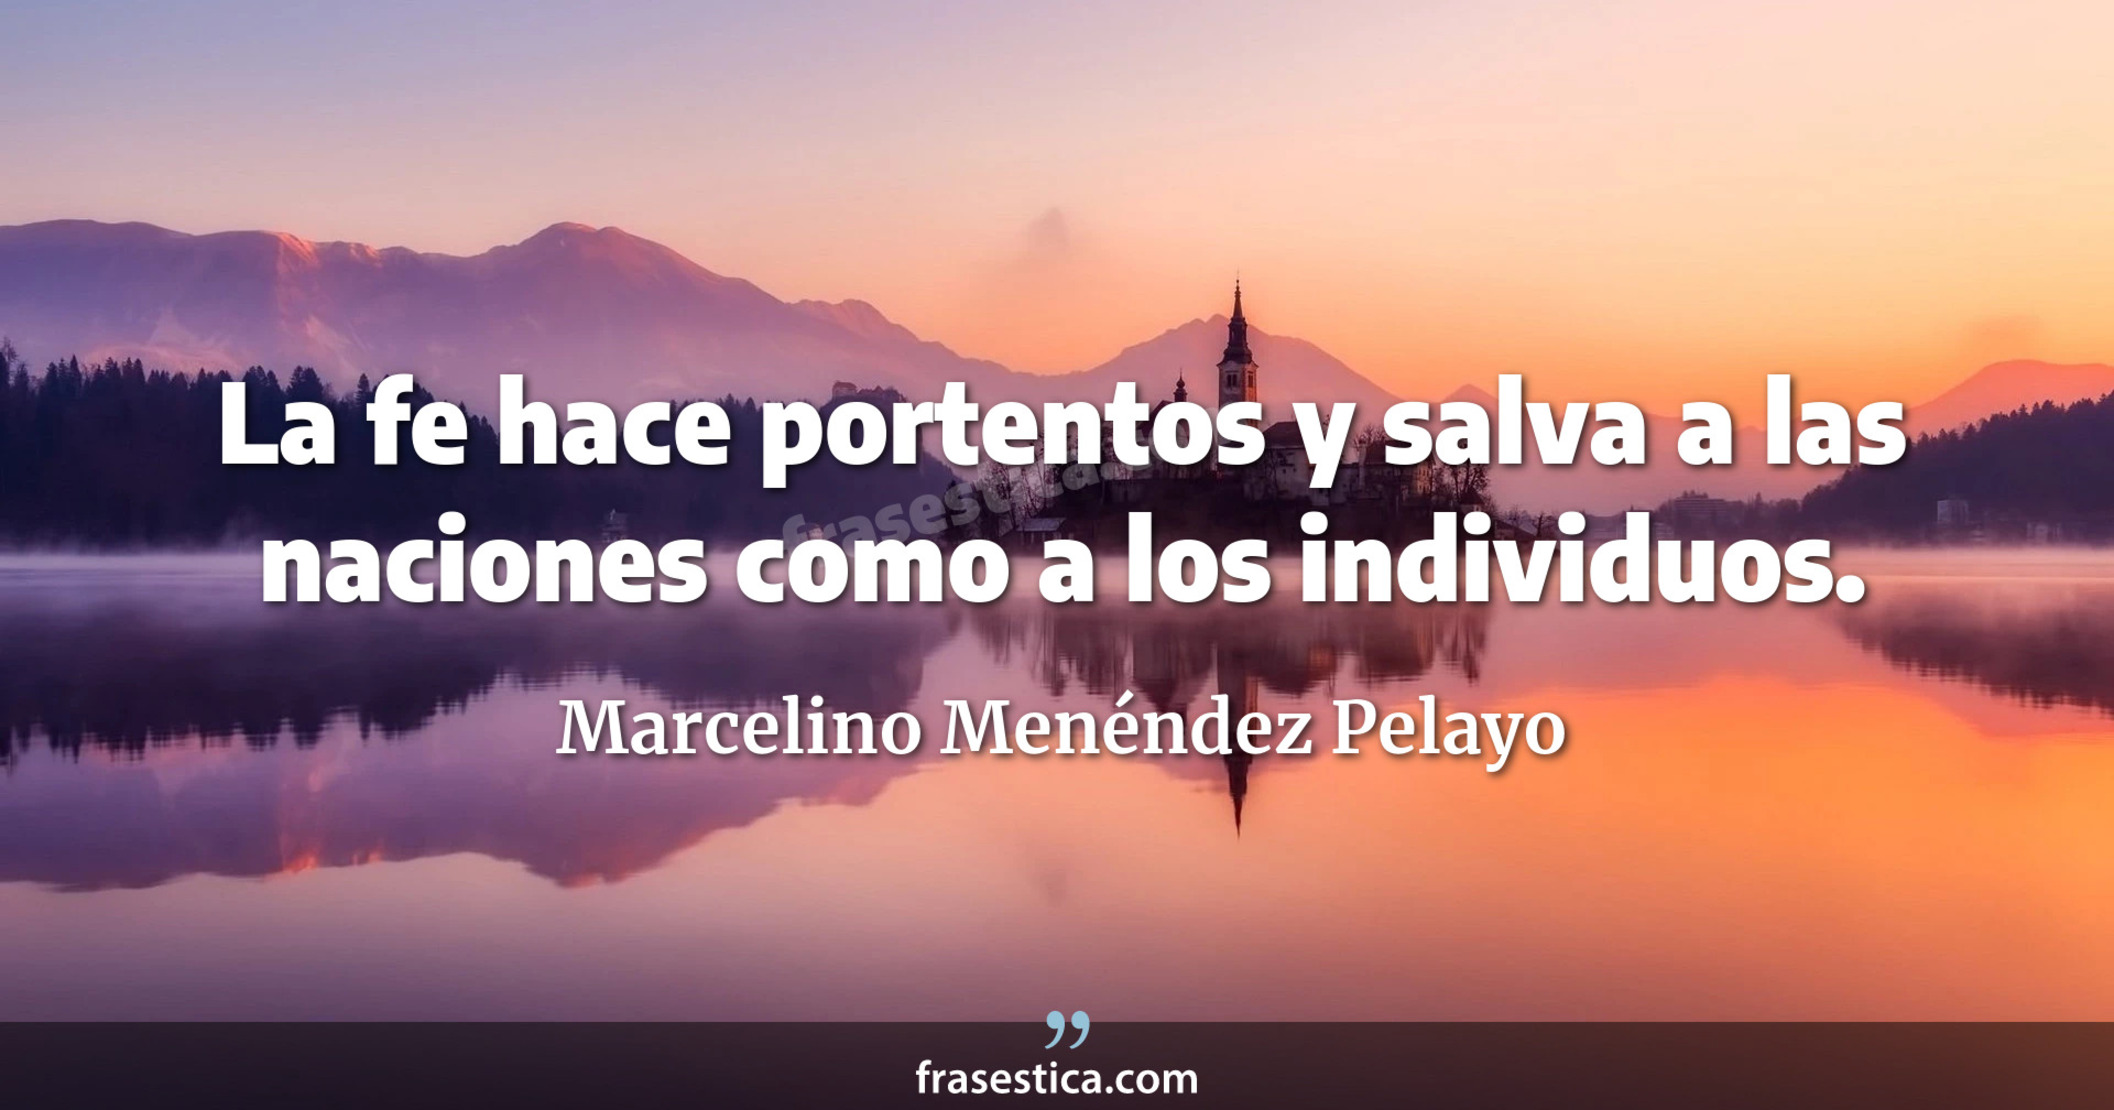 La fe hace portentos y salva a las naciones como a los individuos. - Marcelino Menéndez Pelayo